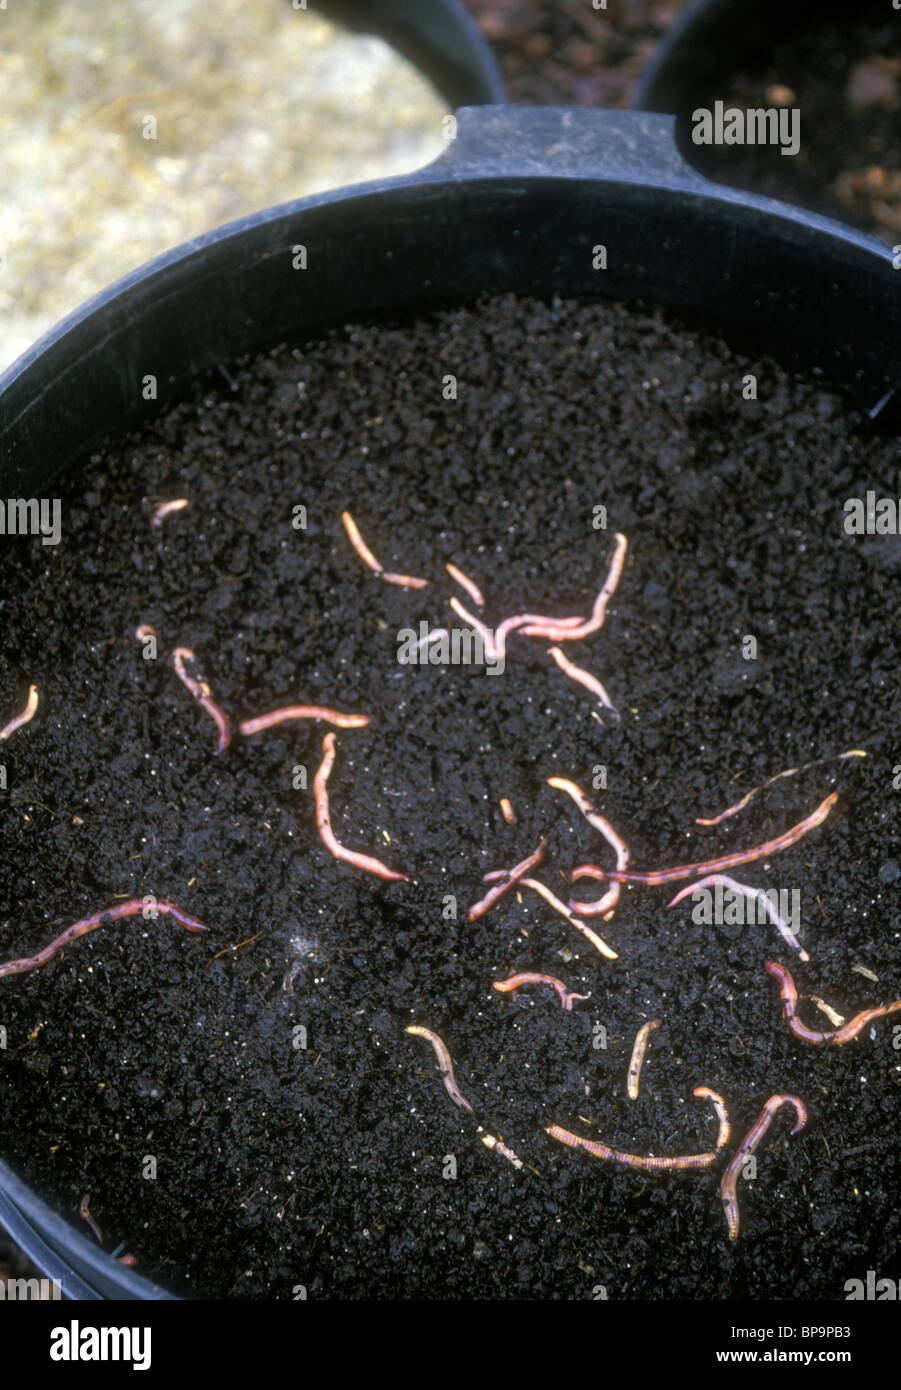 Wurm Kompost bin Vermicompost Deckel & rote Würmer in oberste Schicht der zerlegten Materialien zeigen; Siehe auch 1. Bild geschlossen bin Stockfoto